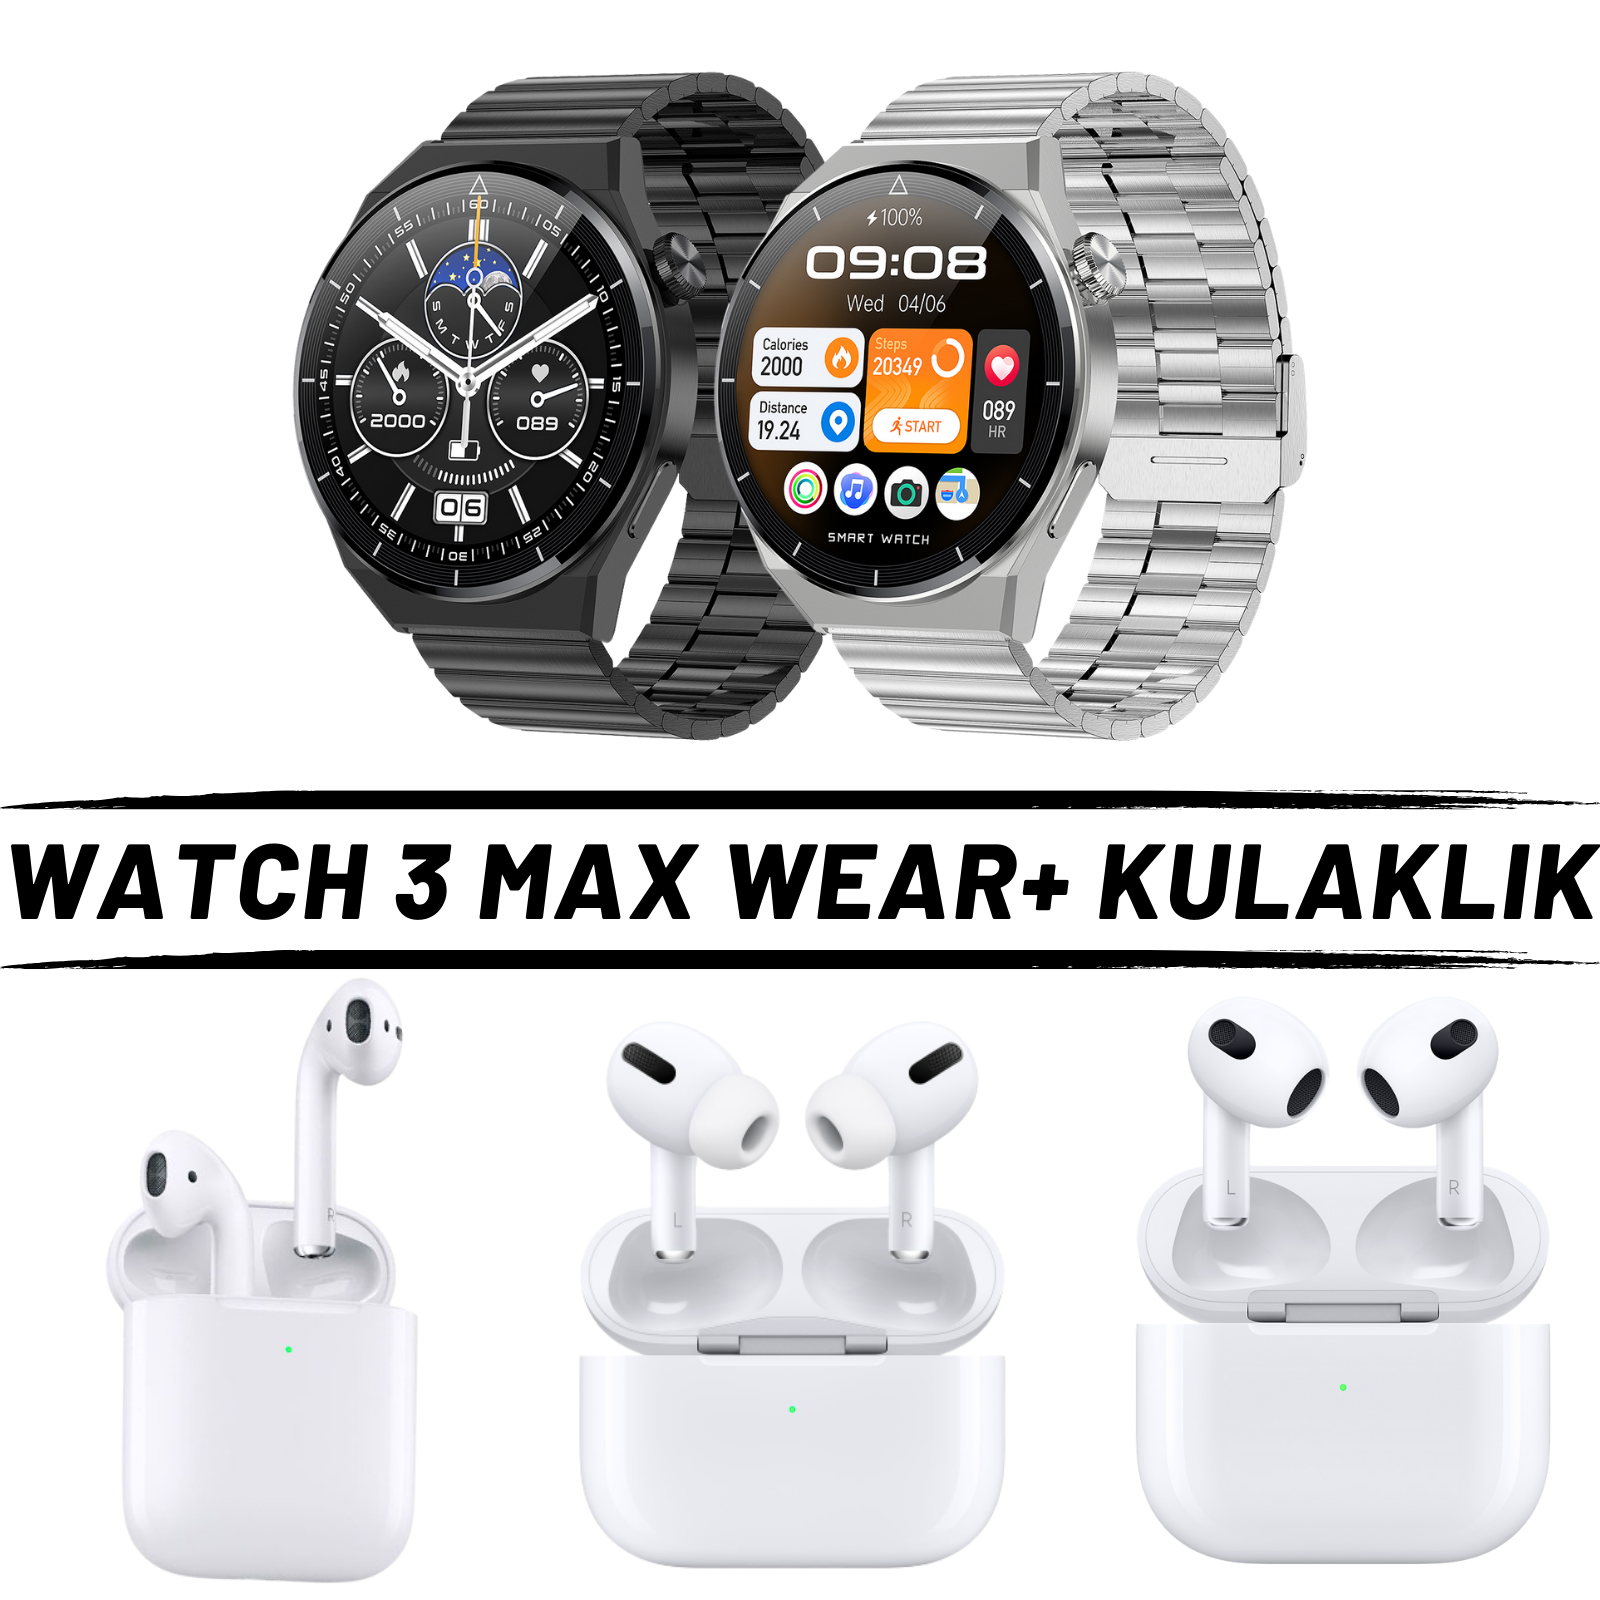 Watch 3 Max Wear + Kulaklık